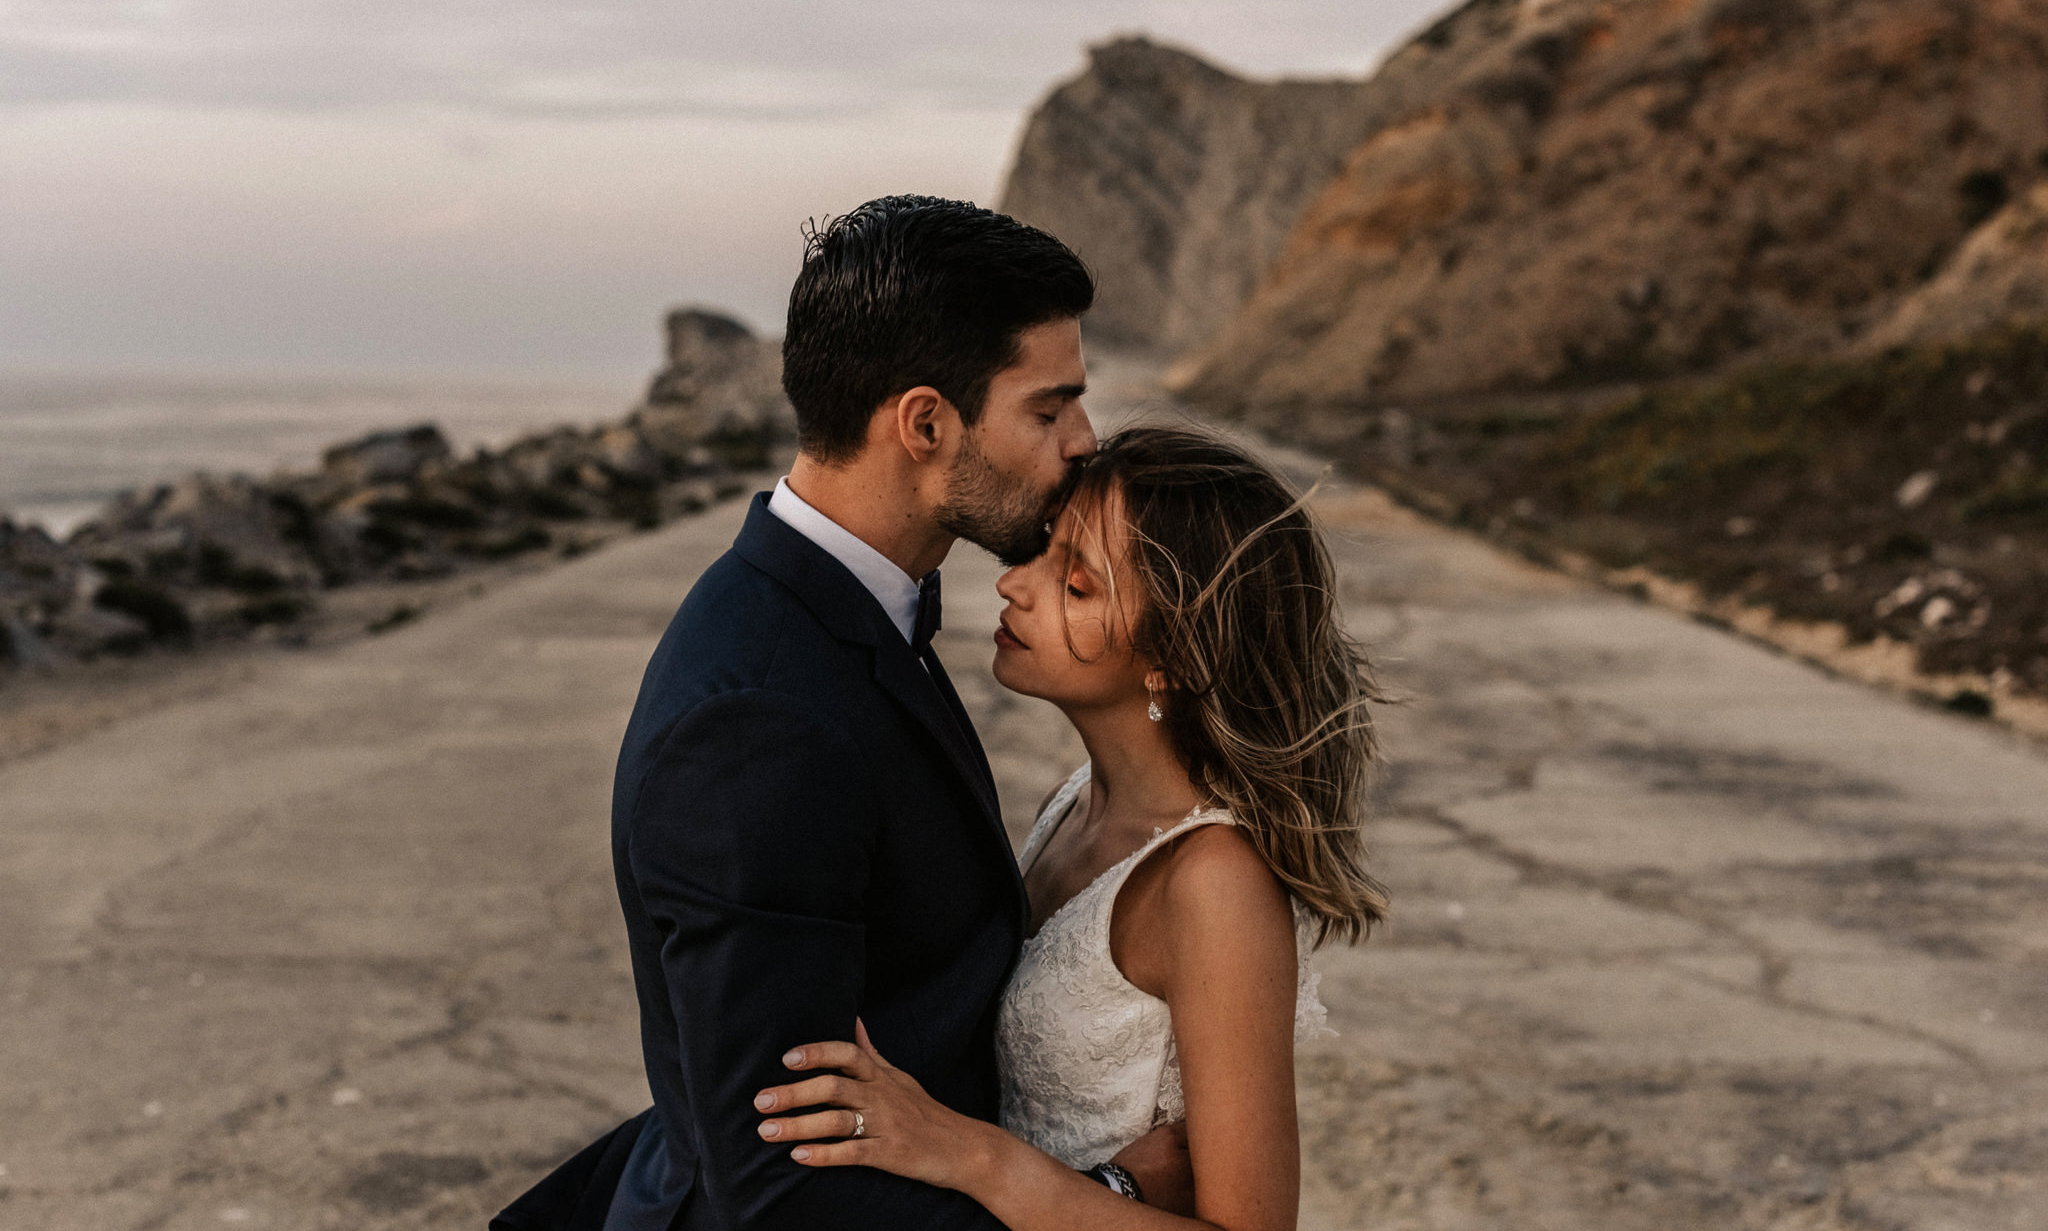 Mauro Correia: Fotógrafo de Casamentos em Portugal